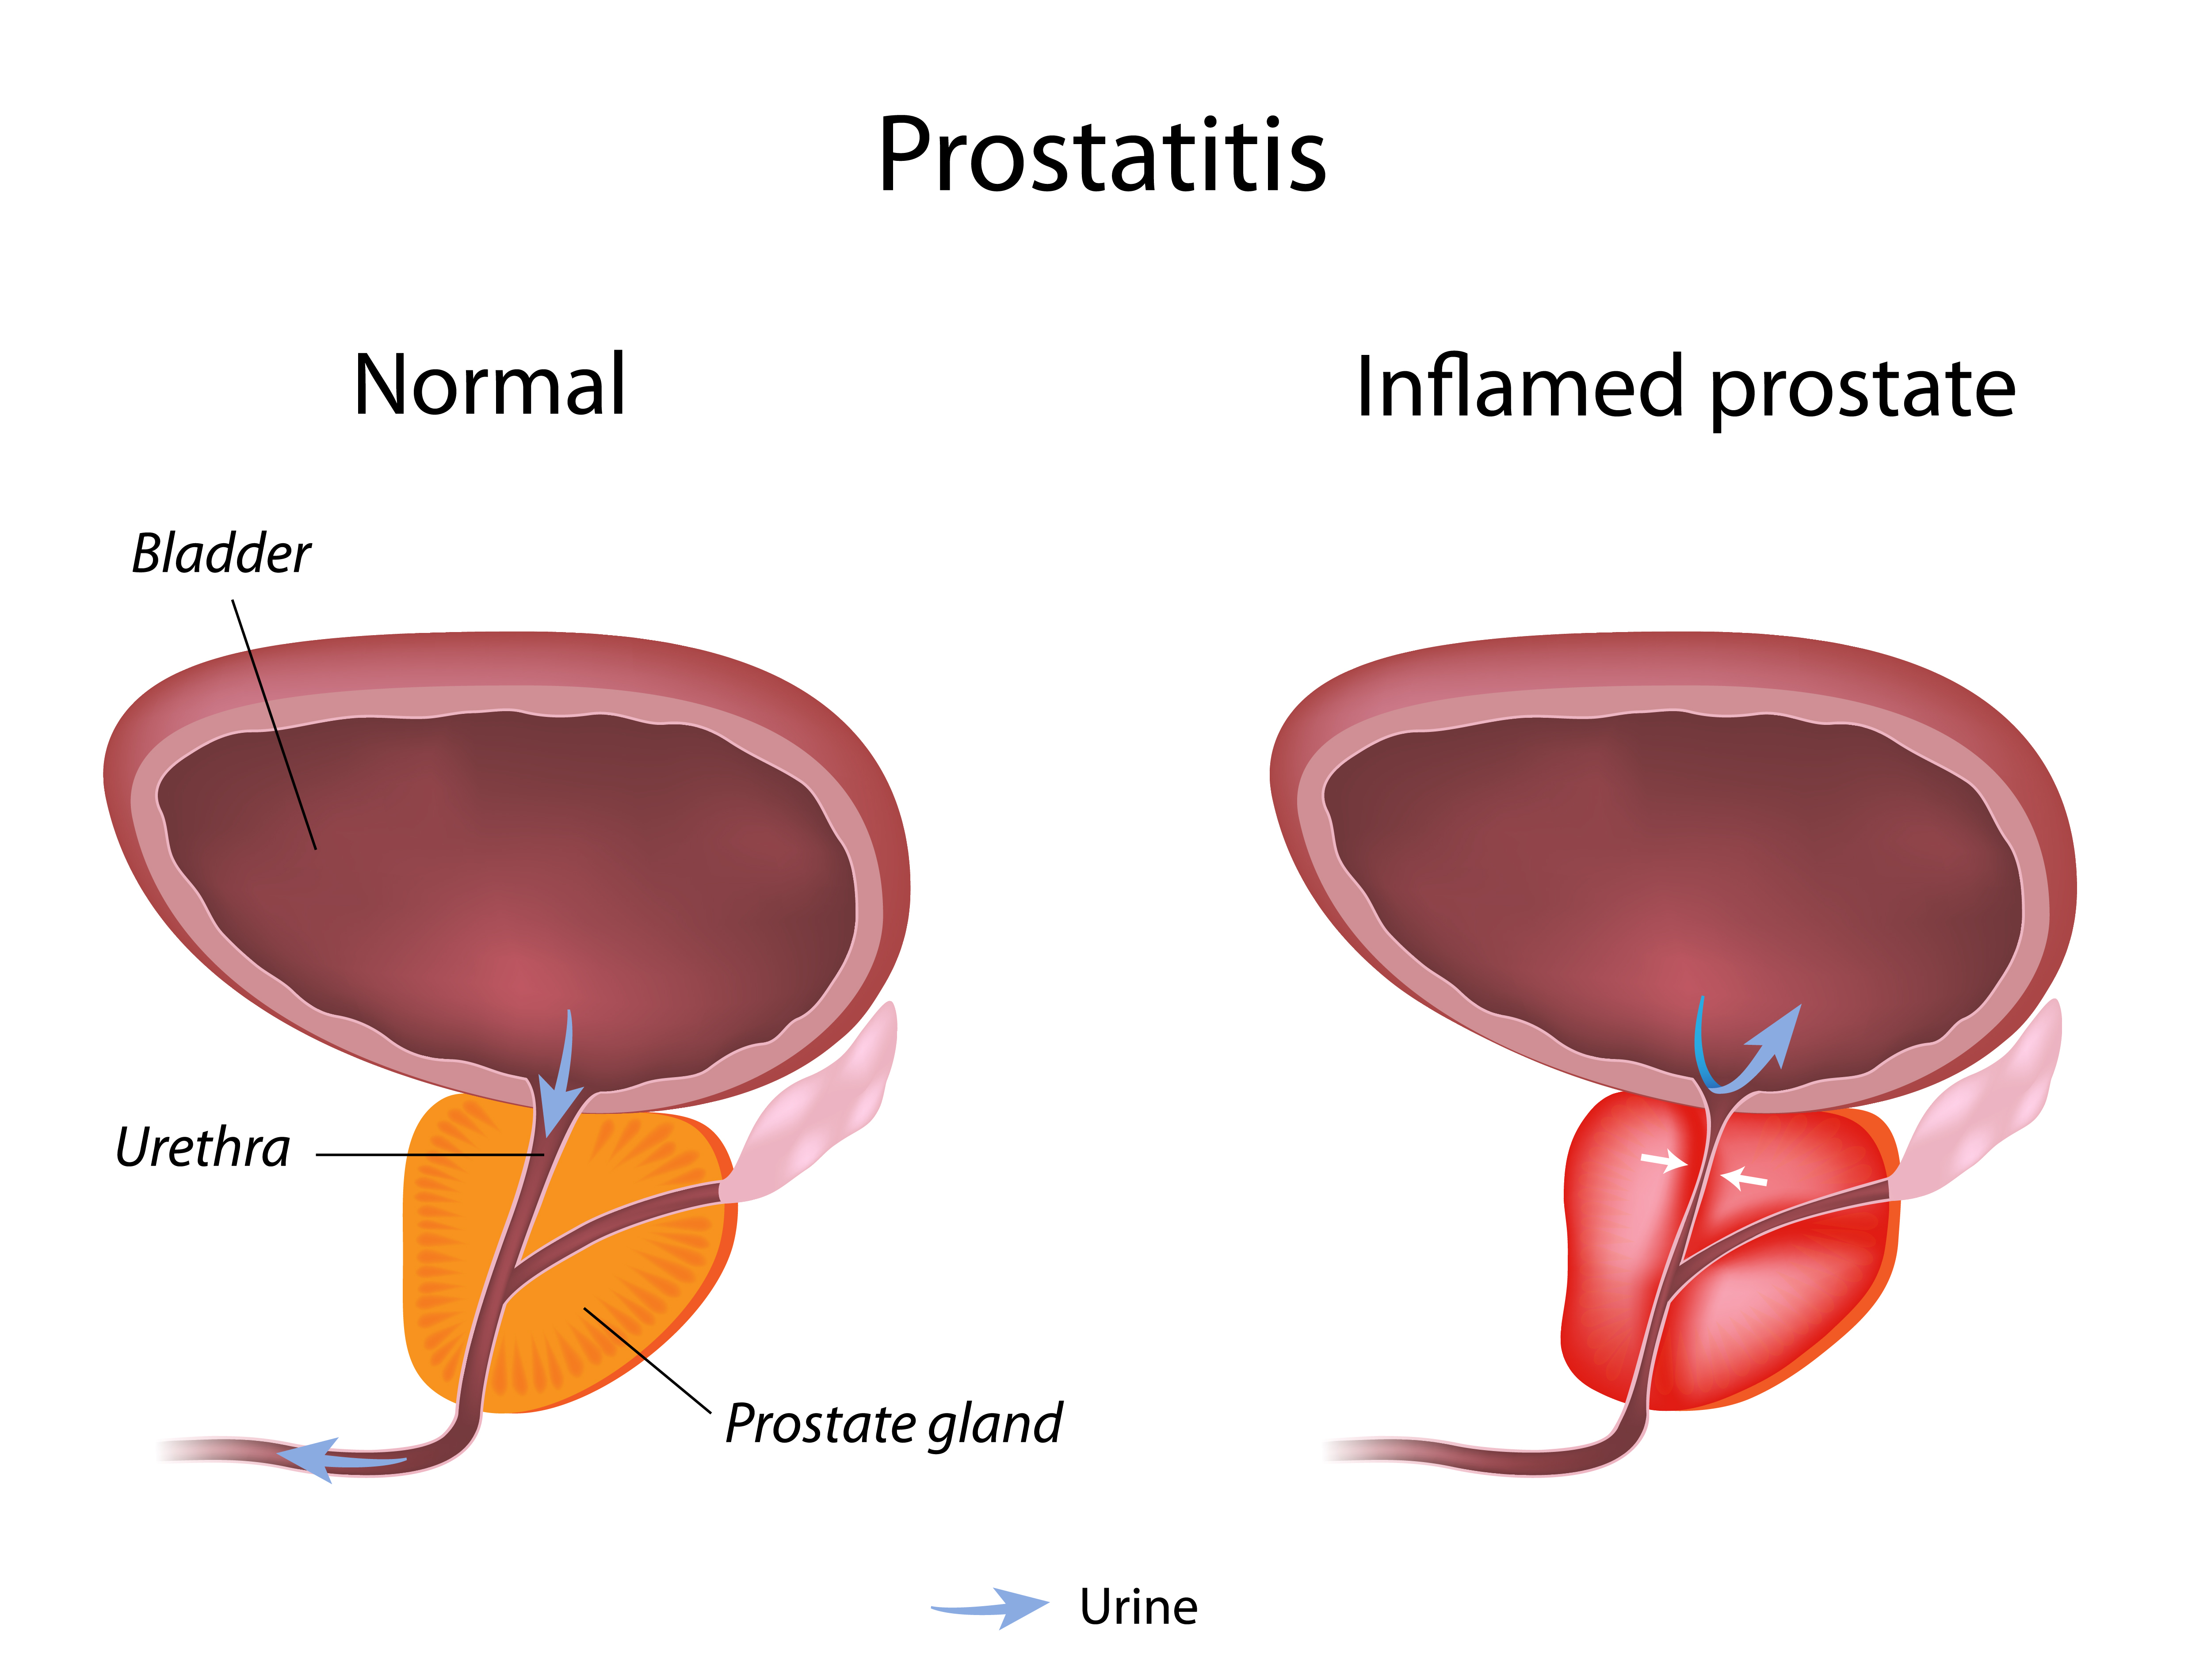 Hogyan nyugodt a prosztatitis Prostatitis kerékpár